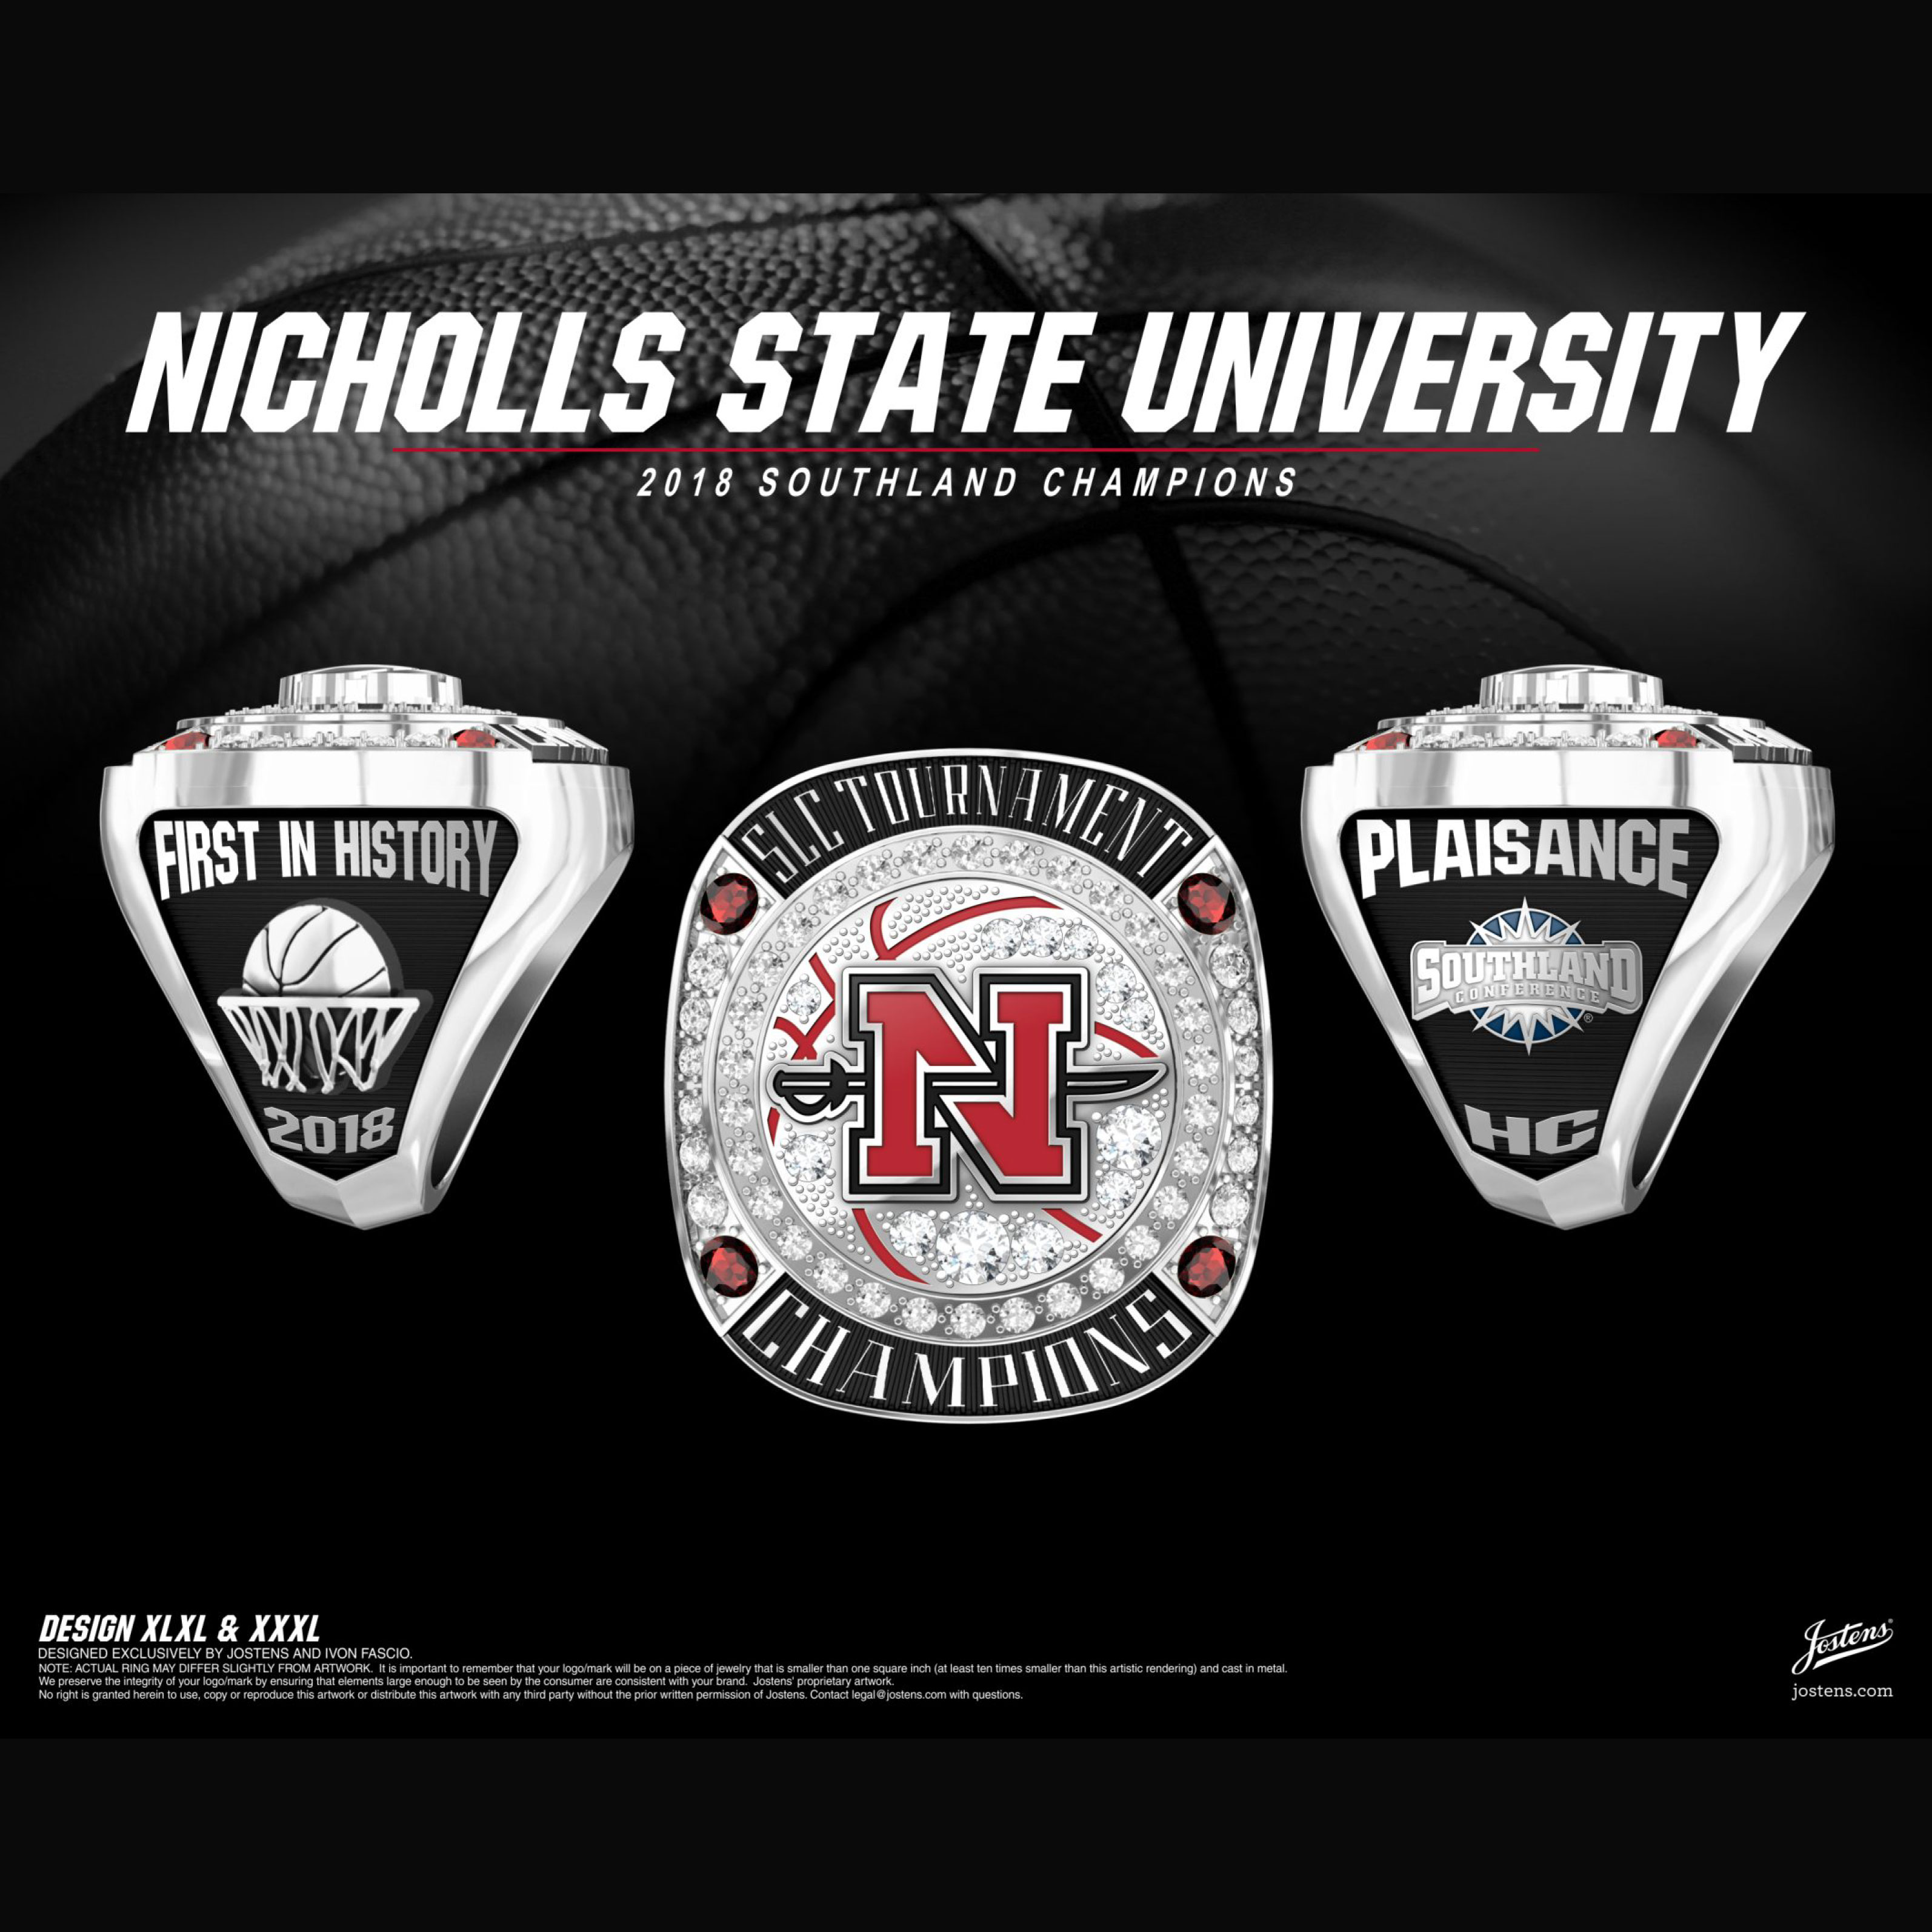 Nicholls State University Women's Basketball 2018 Southland Championship Ring